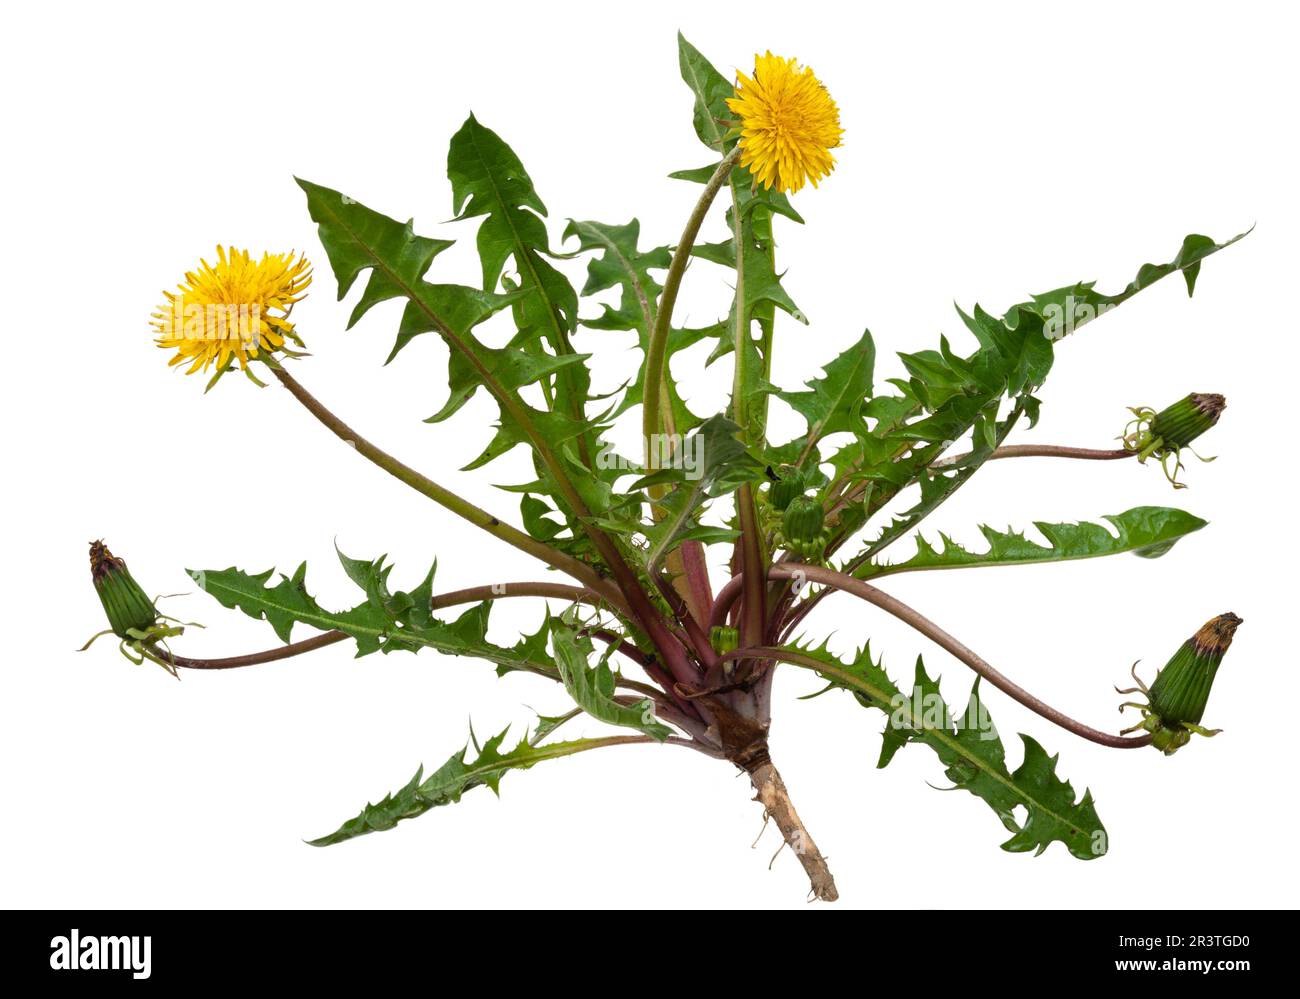 Planta medicinal: Diente de león (Taraxacum officinale) Foto de stock